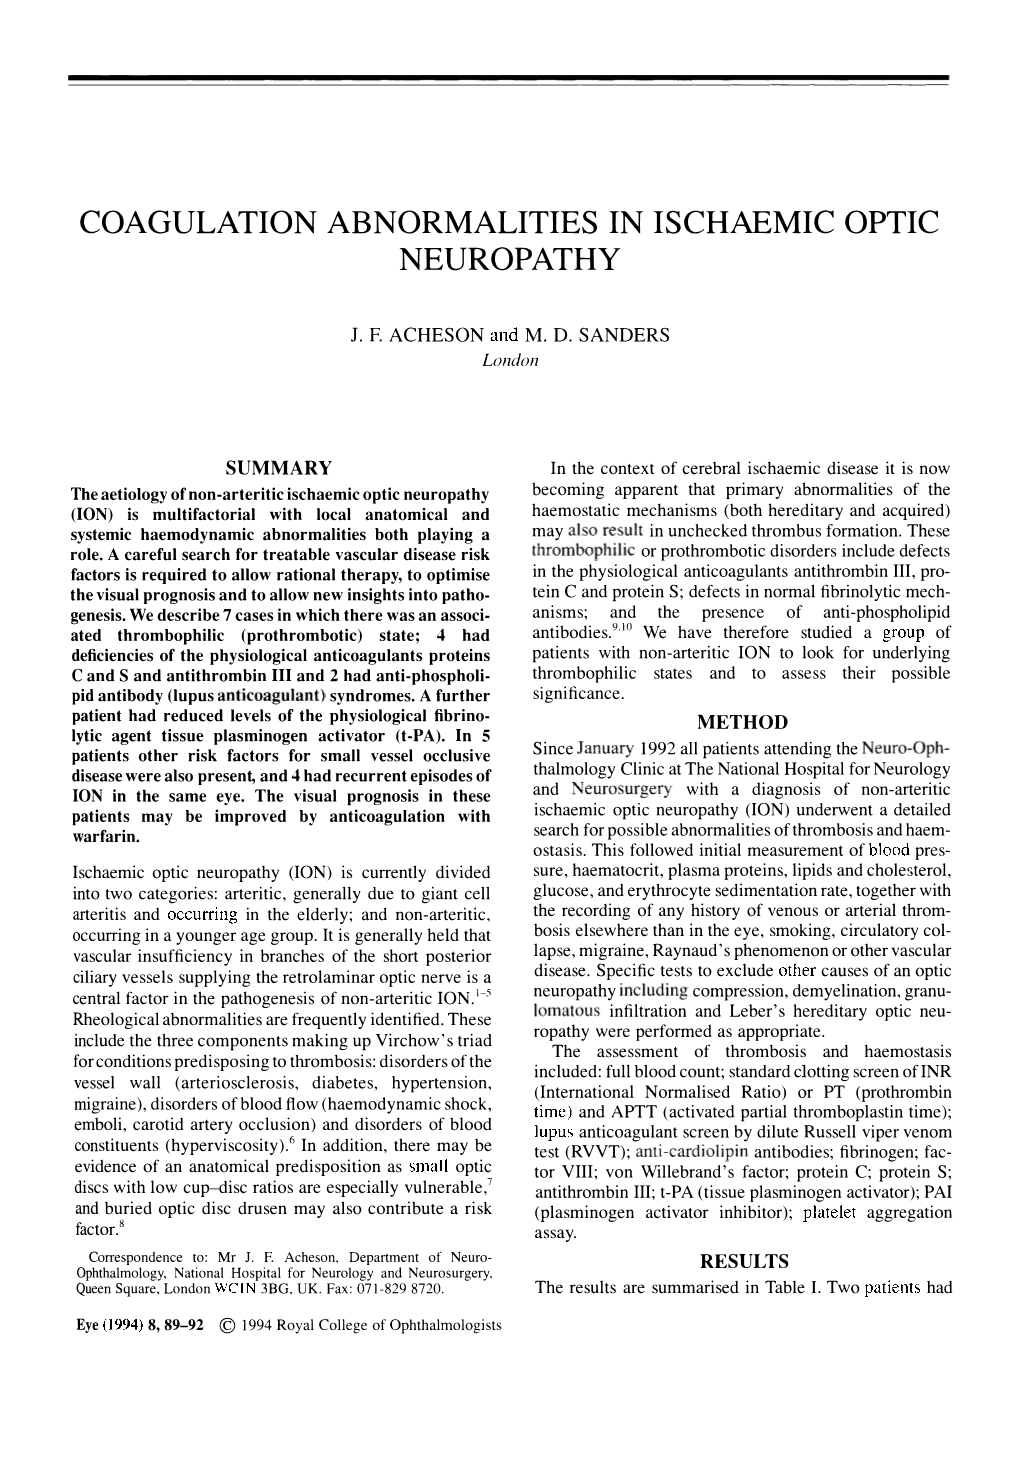 Coagulation Abnormalities in Ischaemic Optic Neuropathy